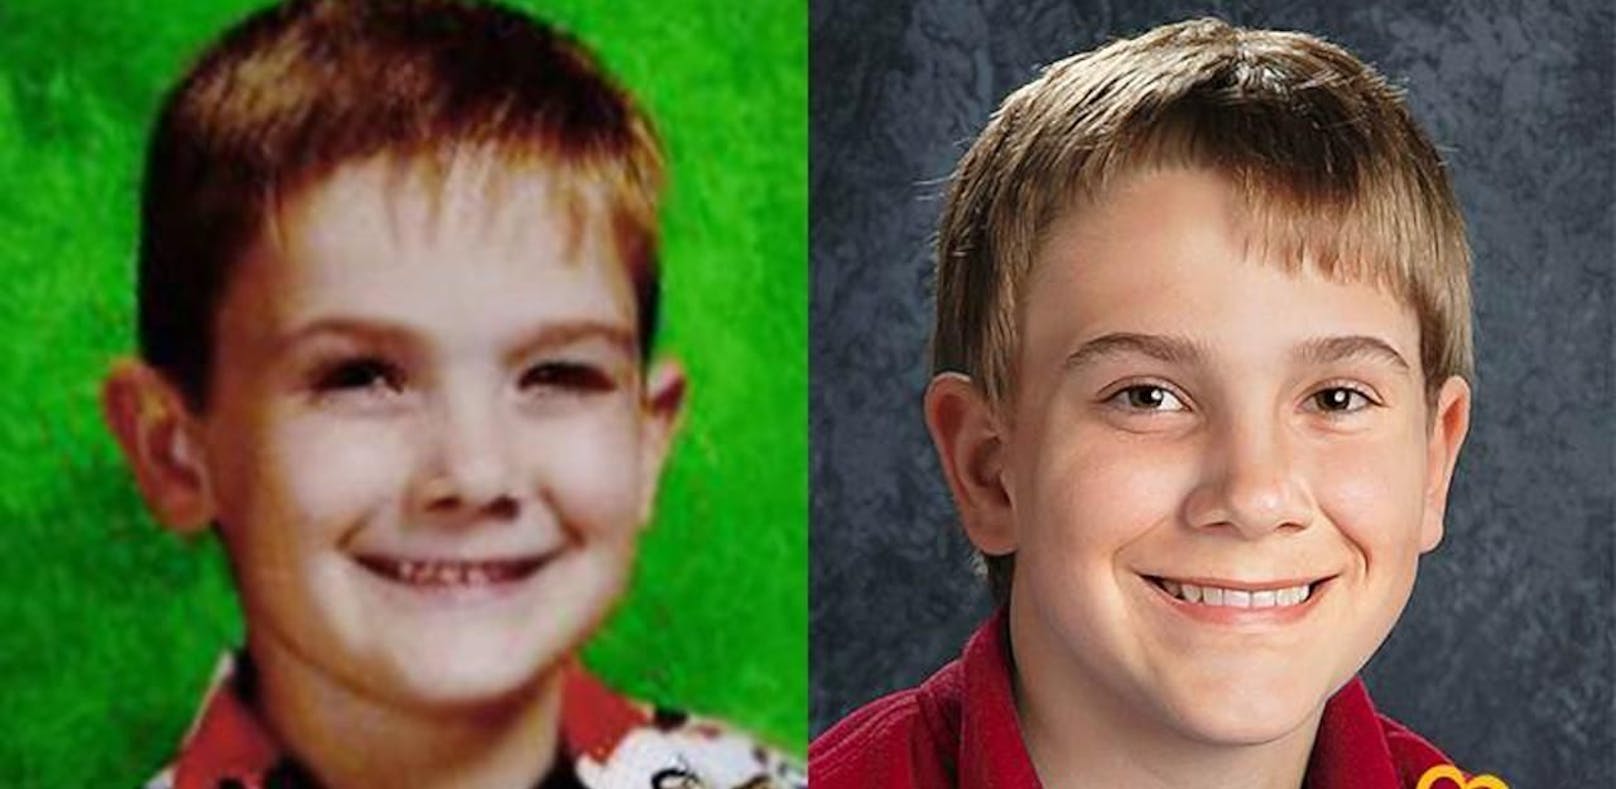 Links sieht man Timmothy im Jahr 2011, rechts, so wie er heute aussehen könnte. Das Bild wurde von der Organisation Missing Kids erstellt.
